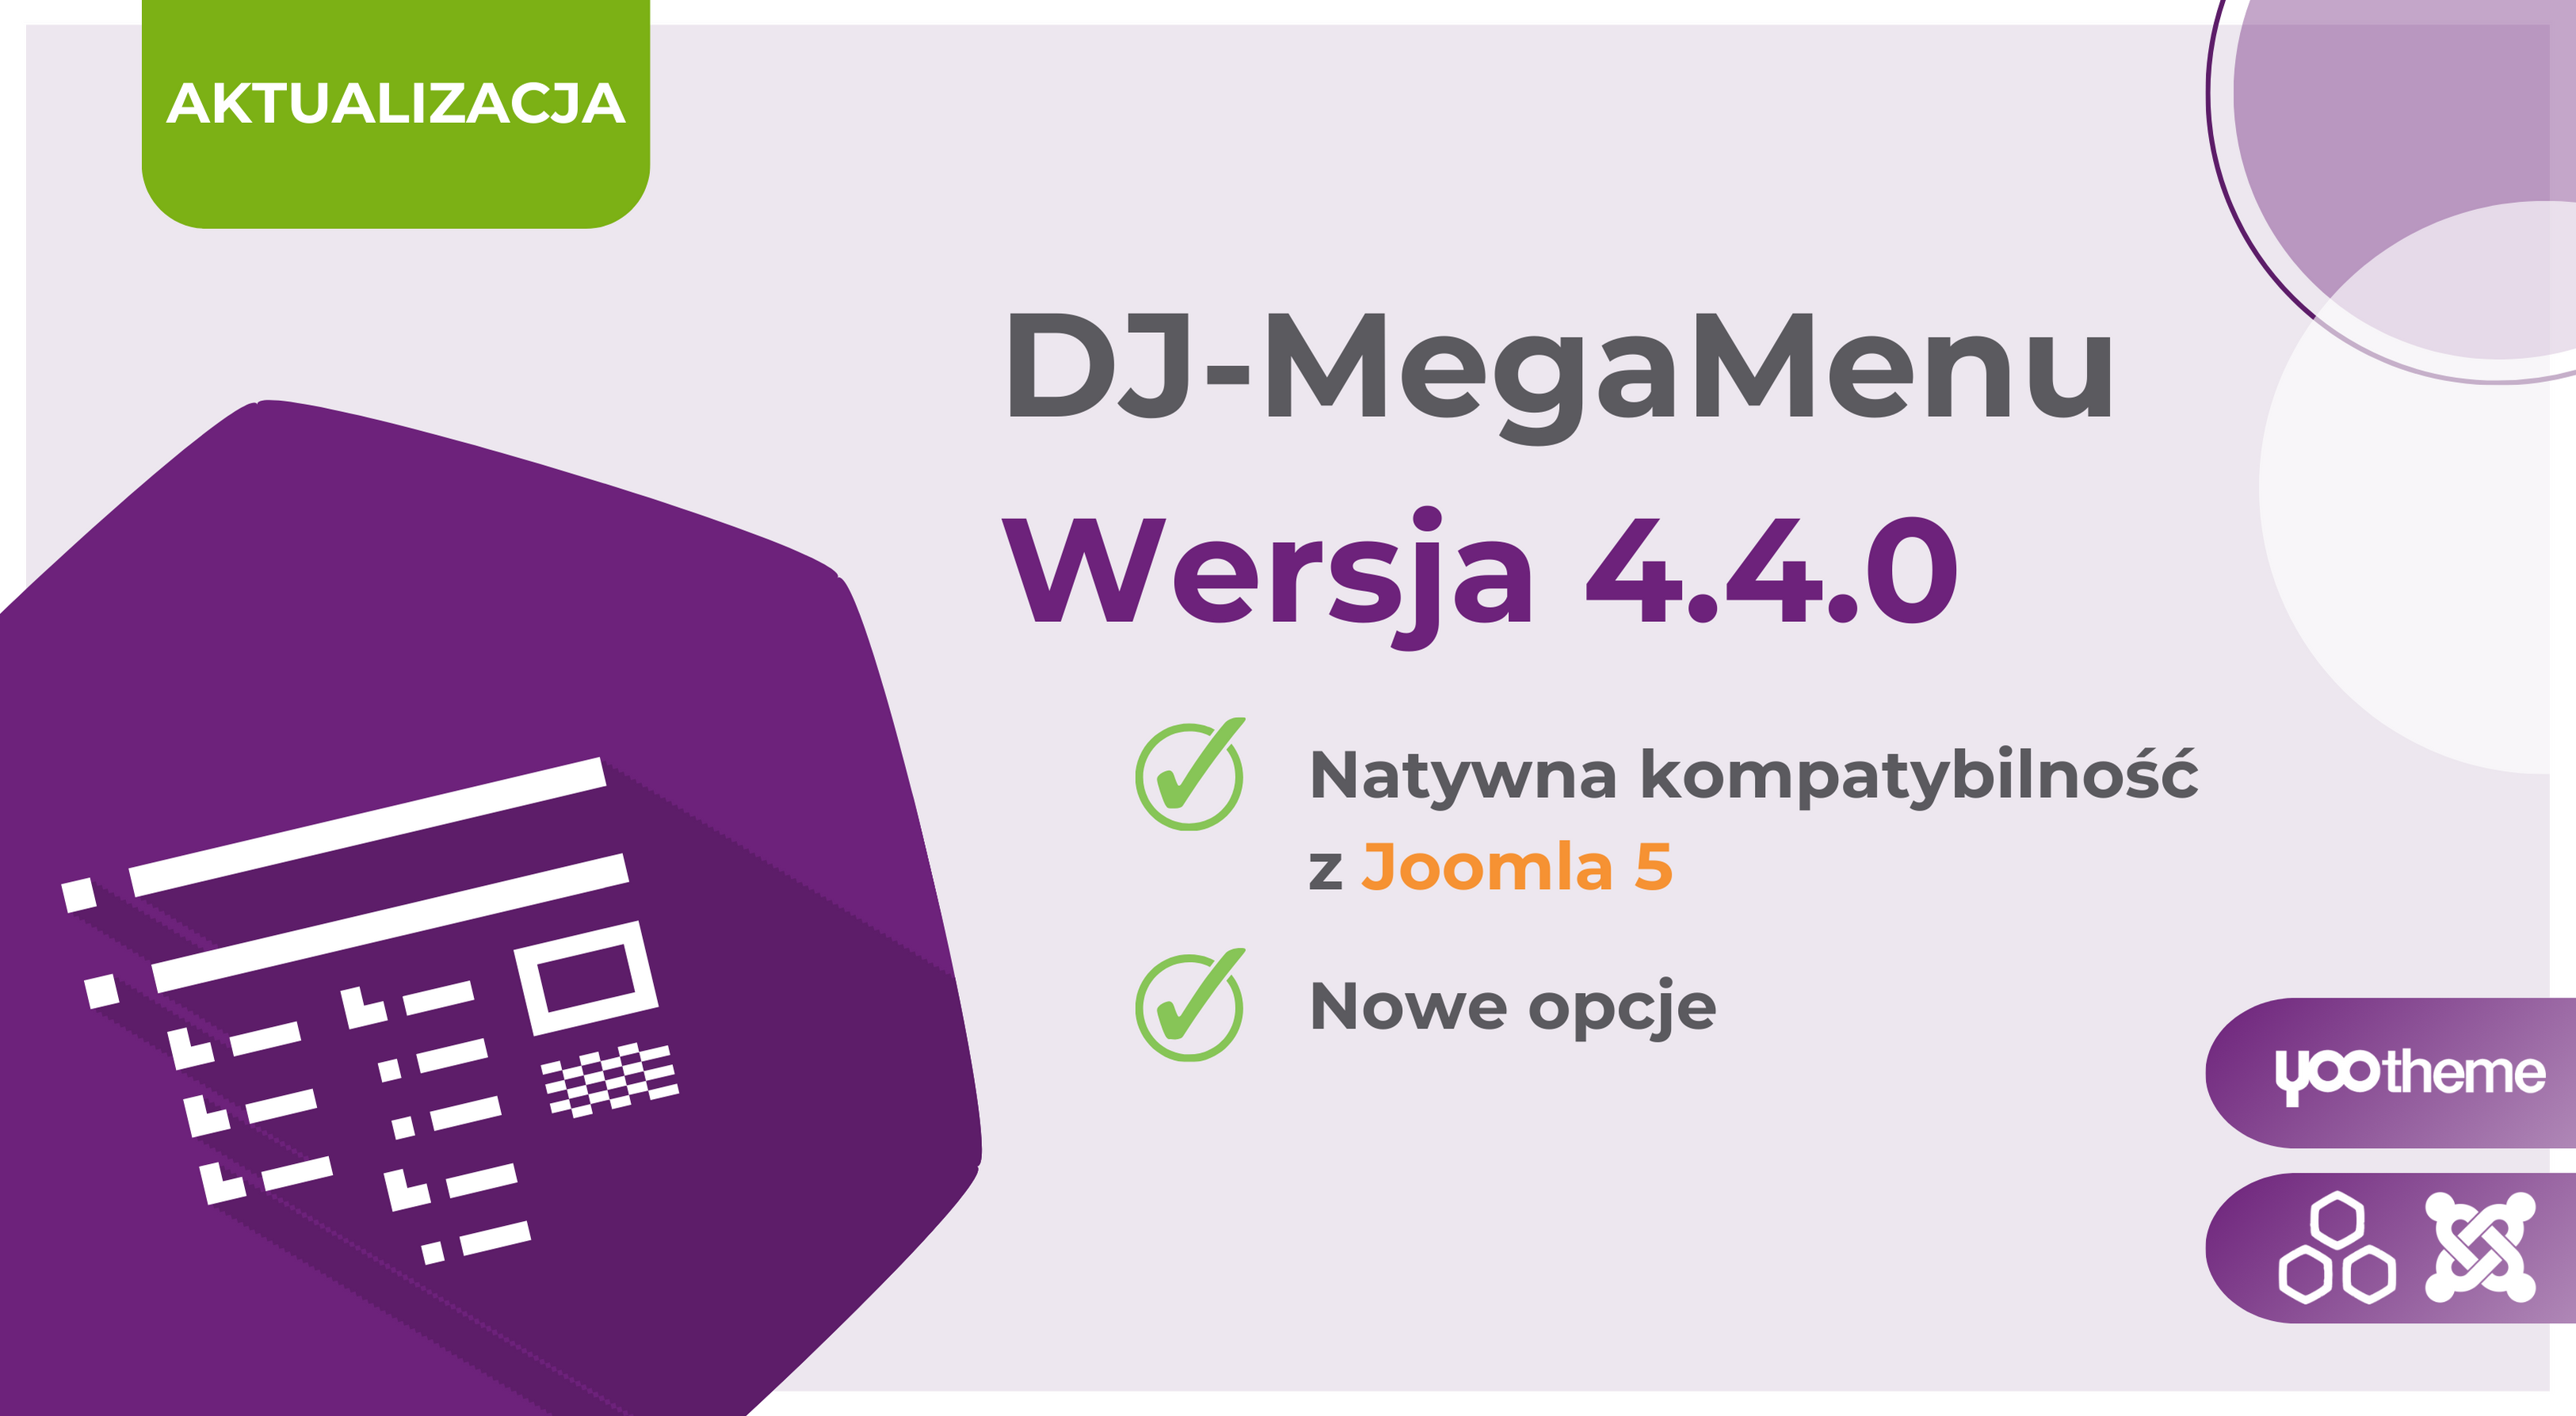 Aktualizacja: DJ-MegaMenu w wersji 4.4.0 z pełna kompatybilnością z Joomla 5!